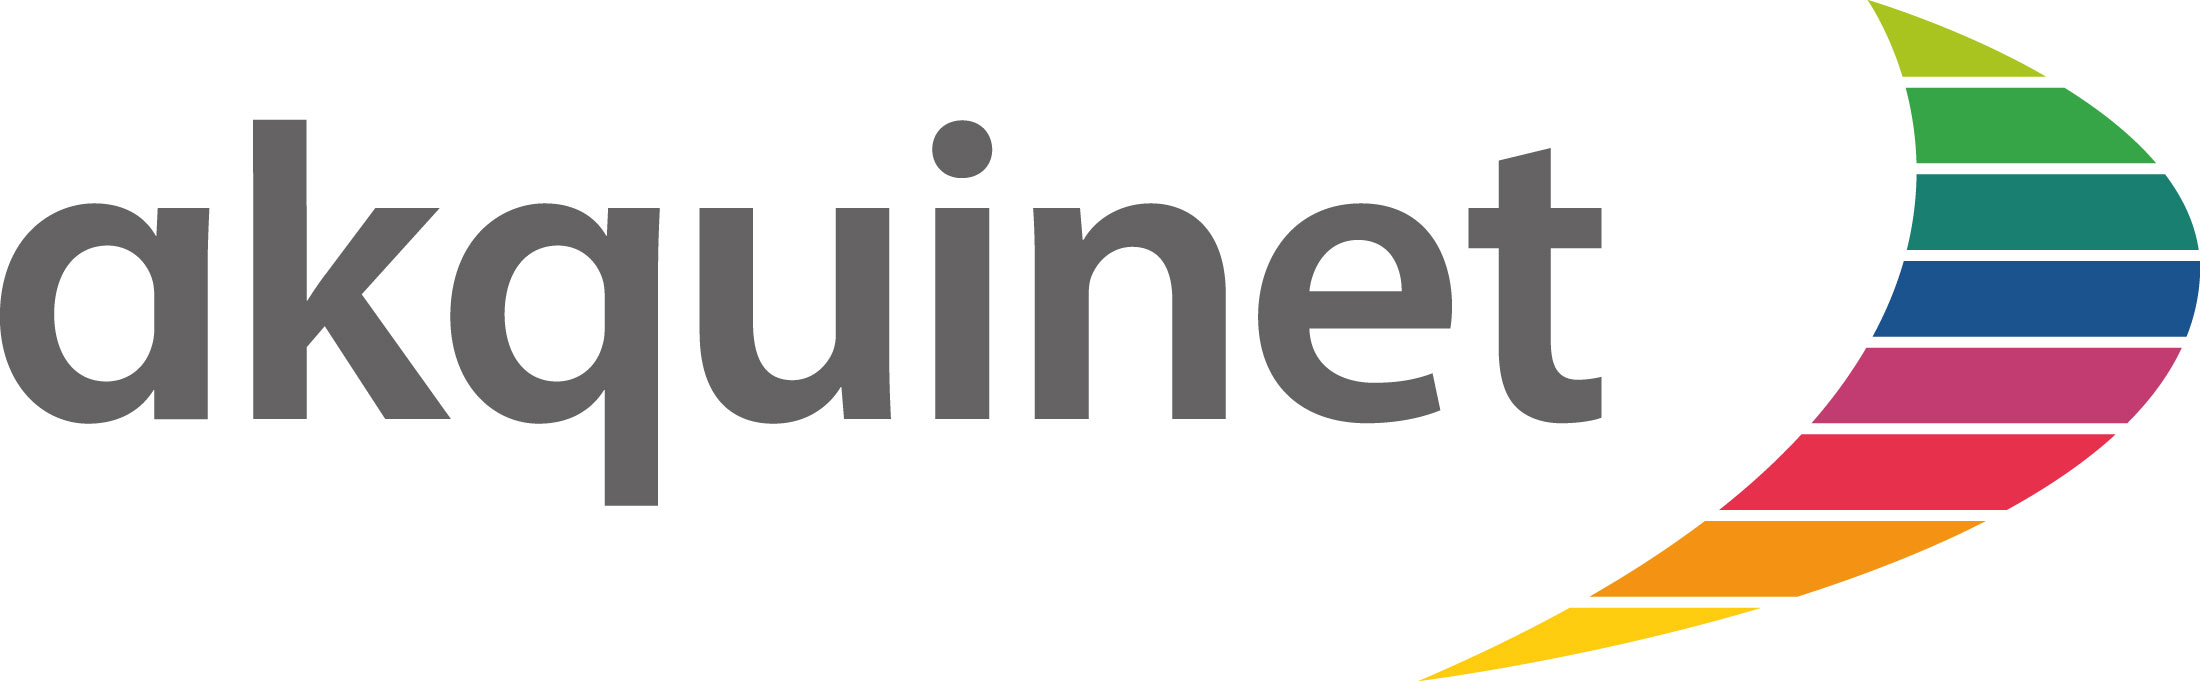 Akquinet partner logo